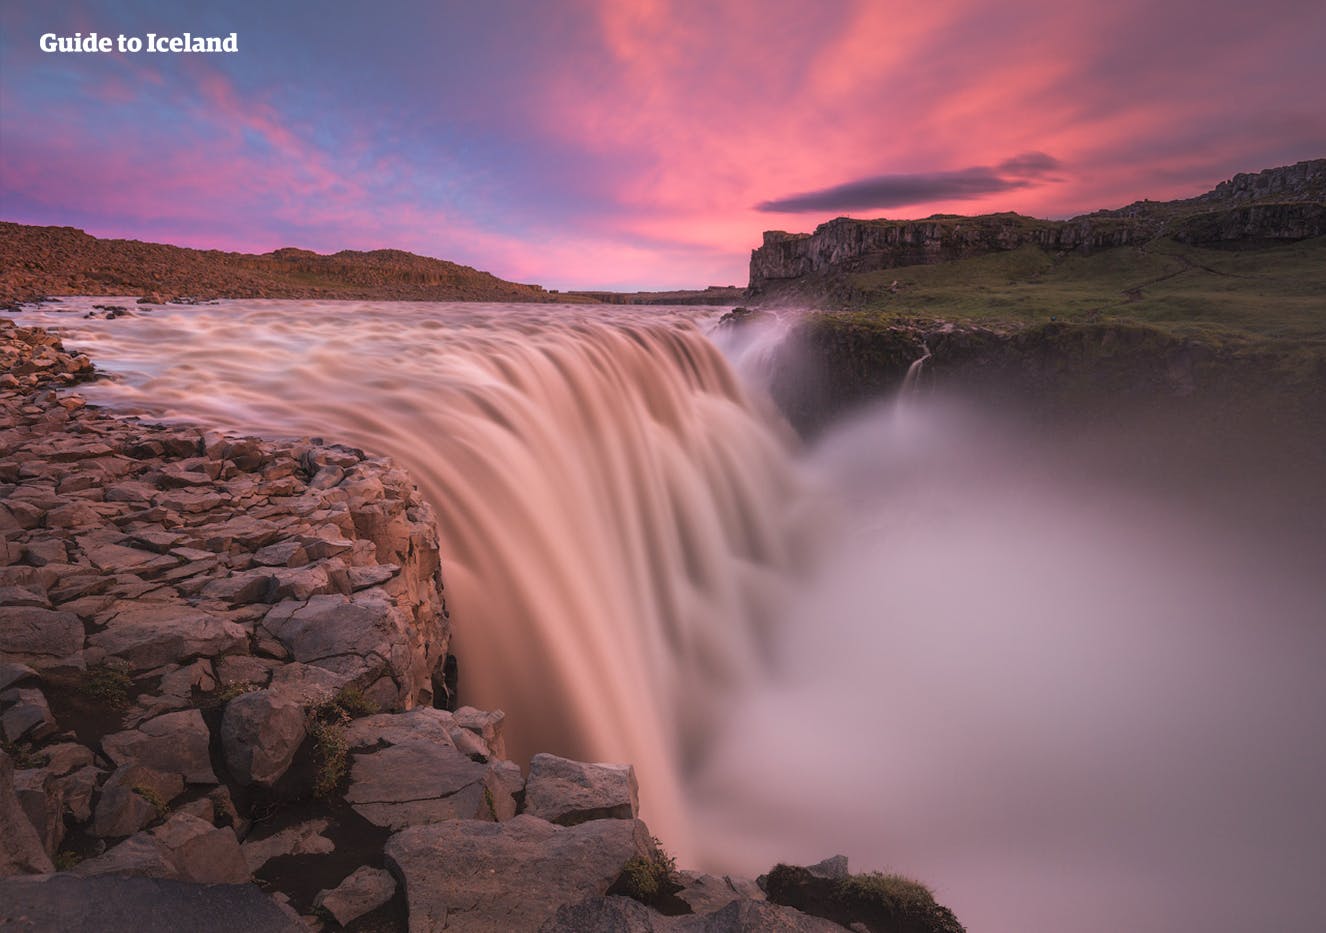 Lors de votre voyage dans le nord de l'Islande, vous pourrez contempler Dettifoss, une cascade impressionnante et considérée comme la cascade plus puissante d'Europe.